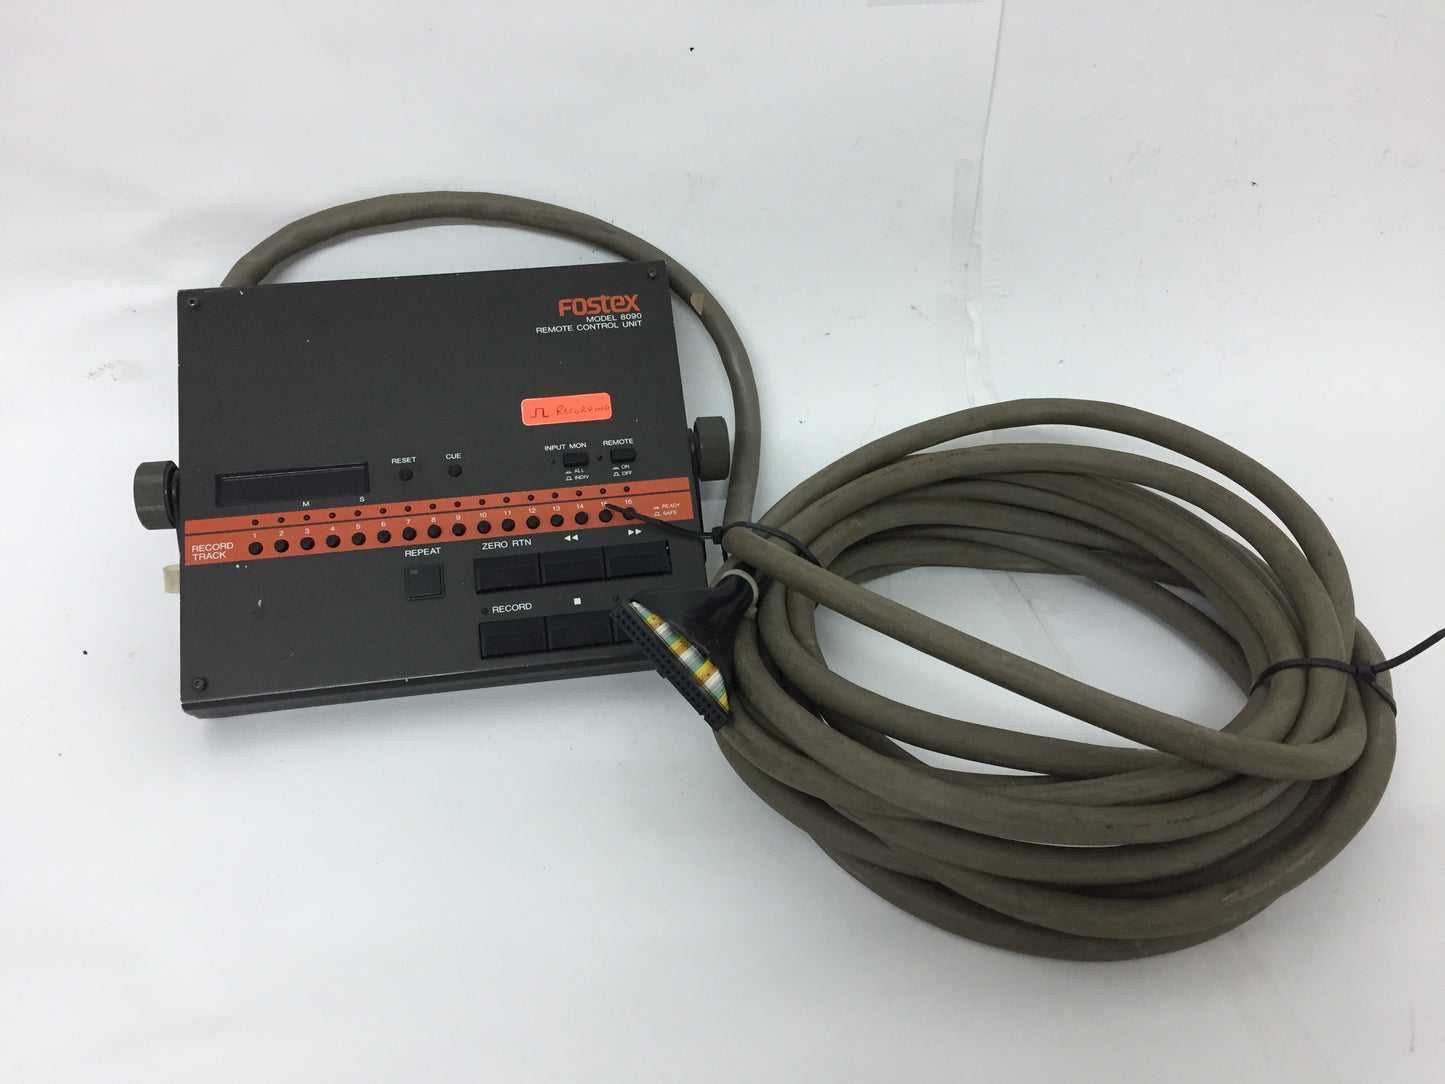 Fostex Model 8090 remote control unit